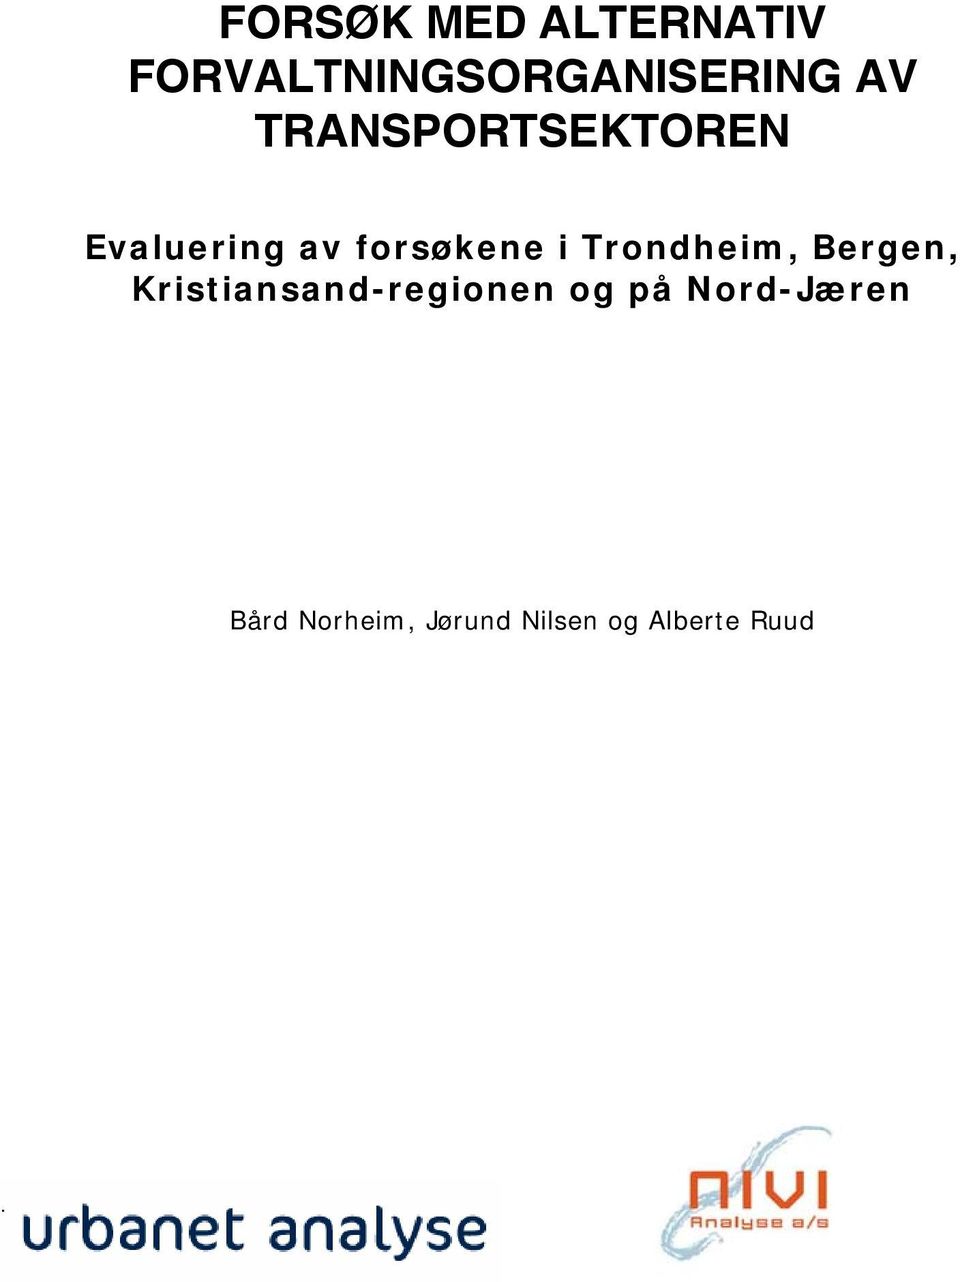 Trondheim, Bergen, Kristiansand-regionen og på